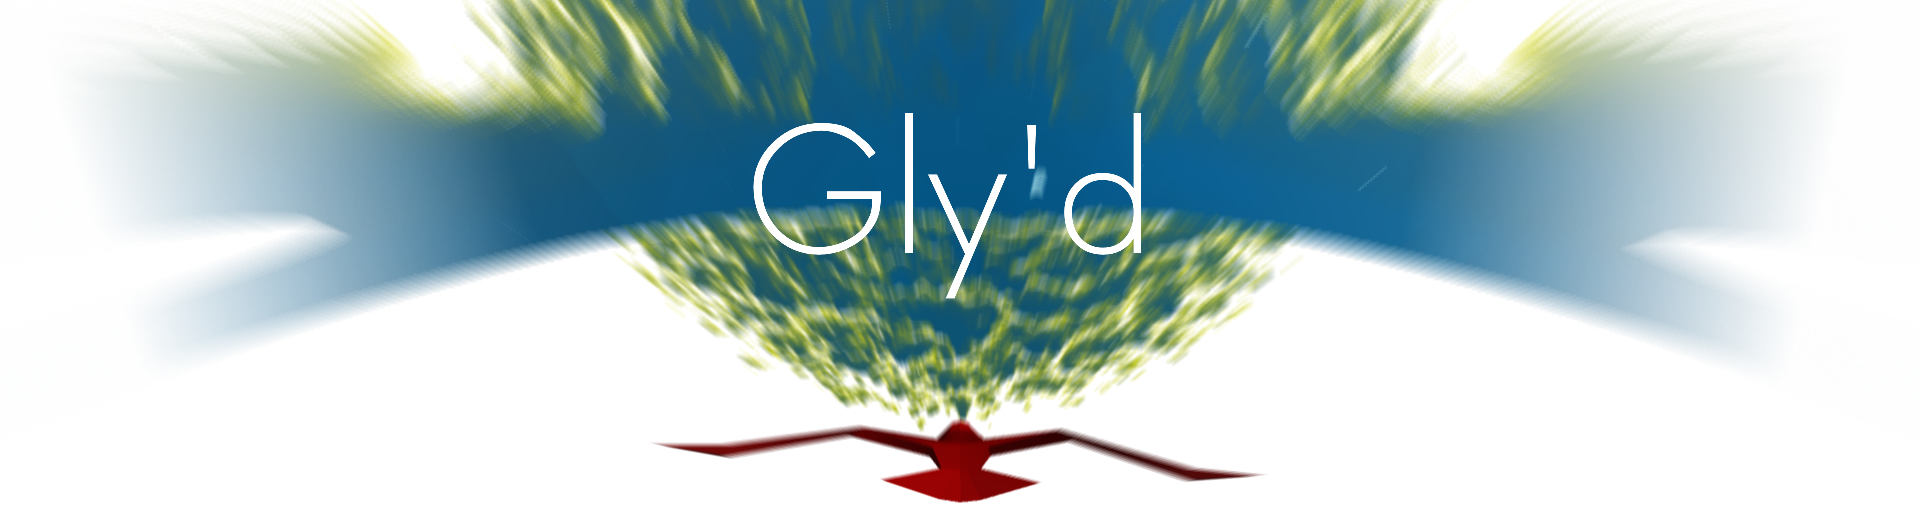 Gly'd